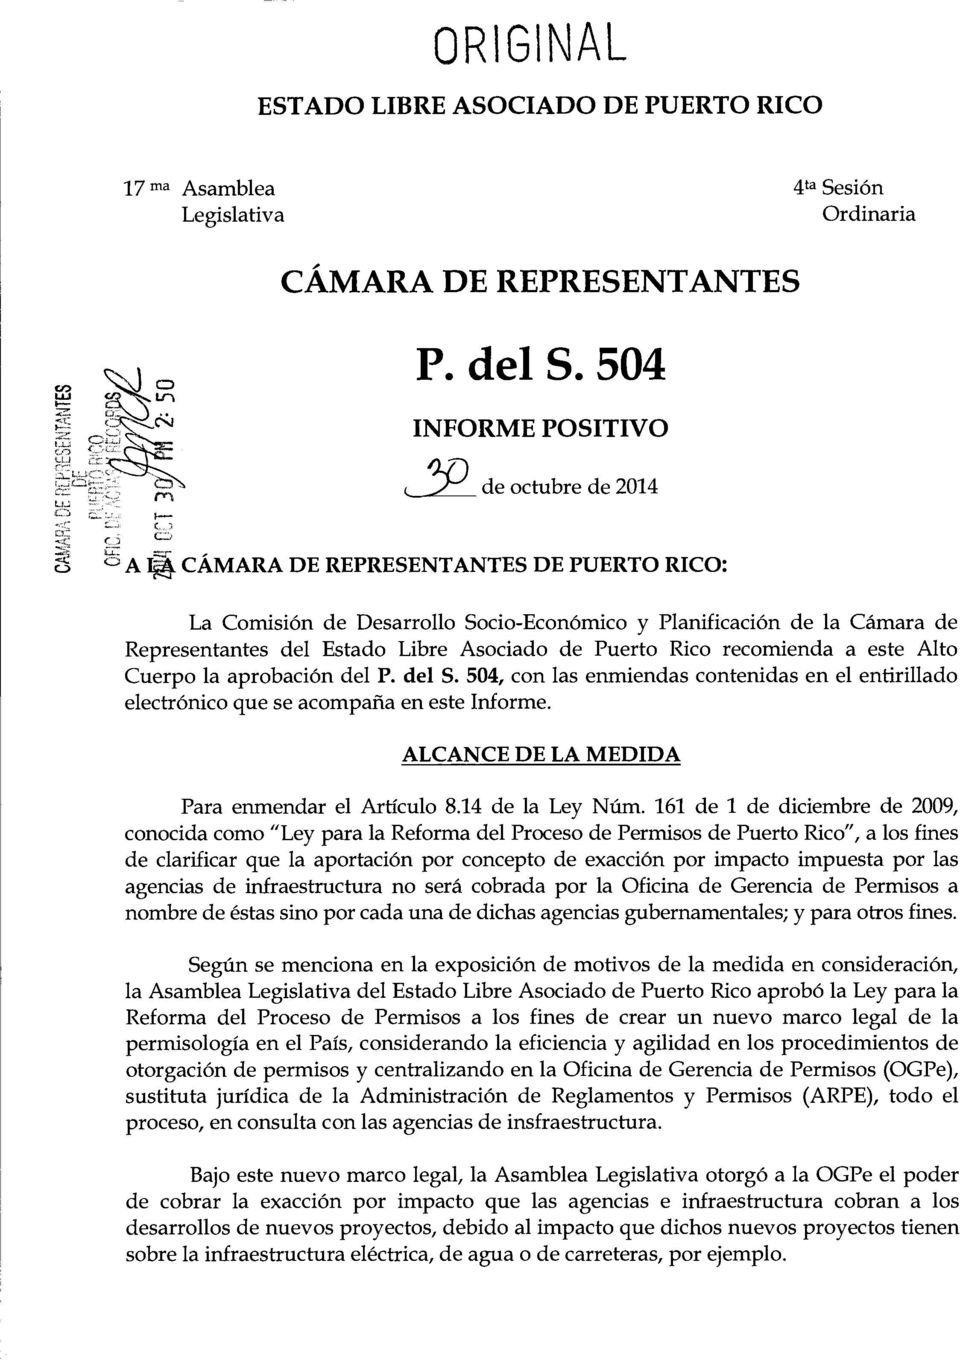 Libre Asodado de Puerto Rico recomienda a este Alto Cuerpo la aprobaci6n del P. del S. 504, con las enmiendas contenidas en el entirillado electr6nico que se acompafia en este Informe.